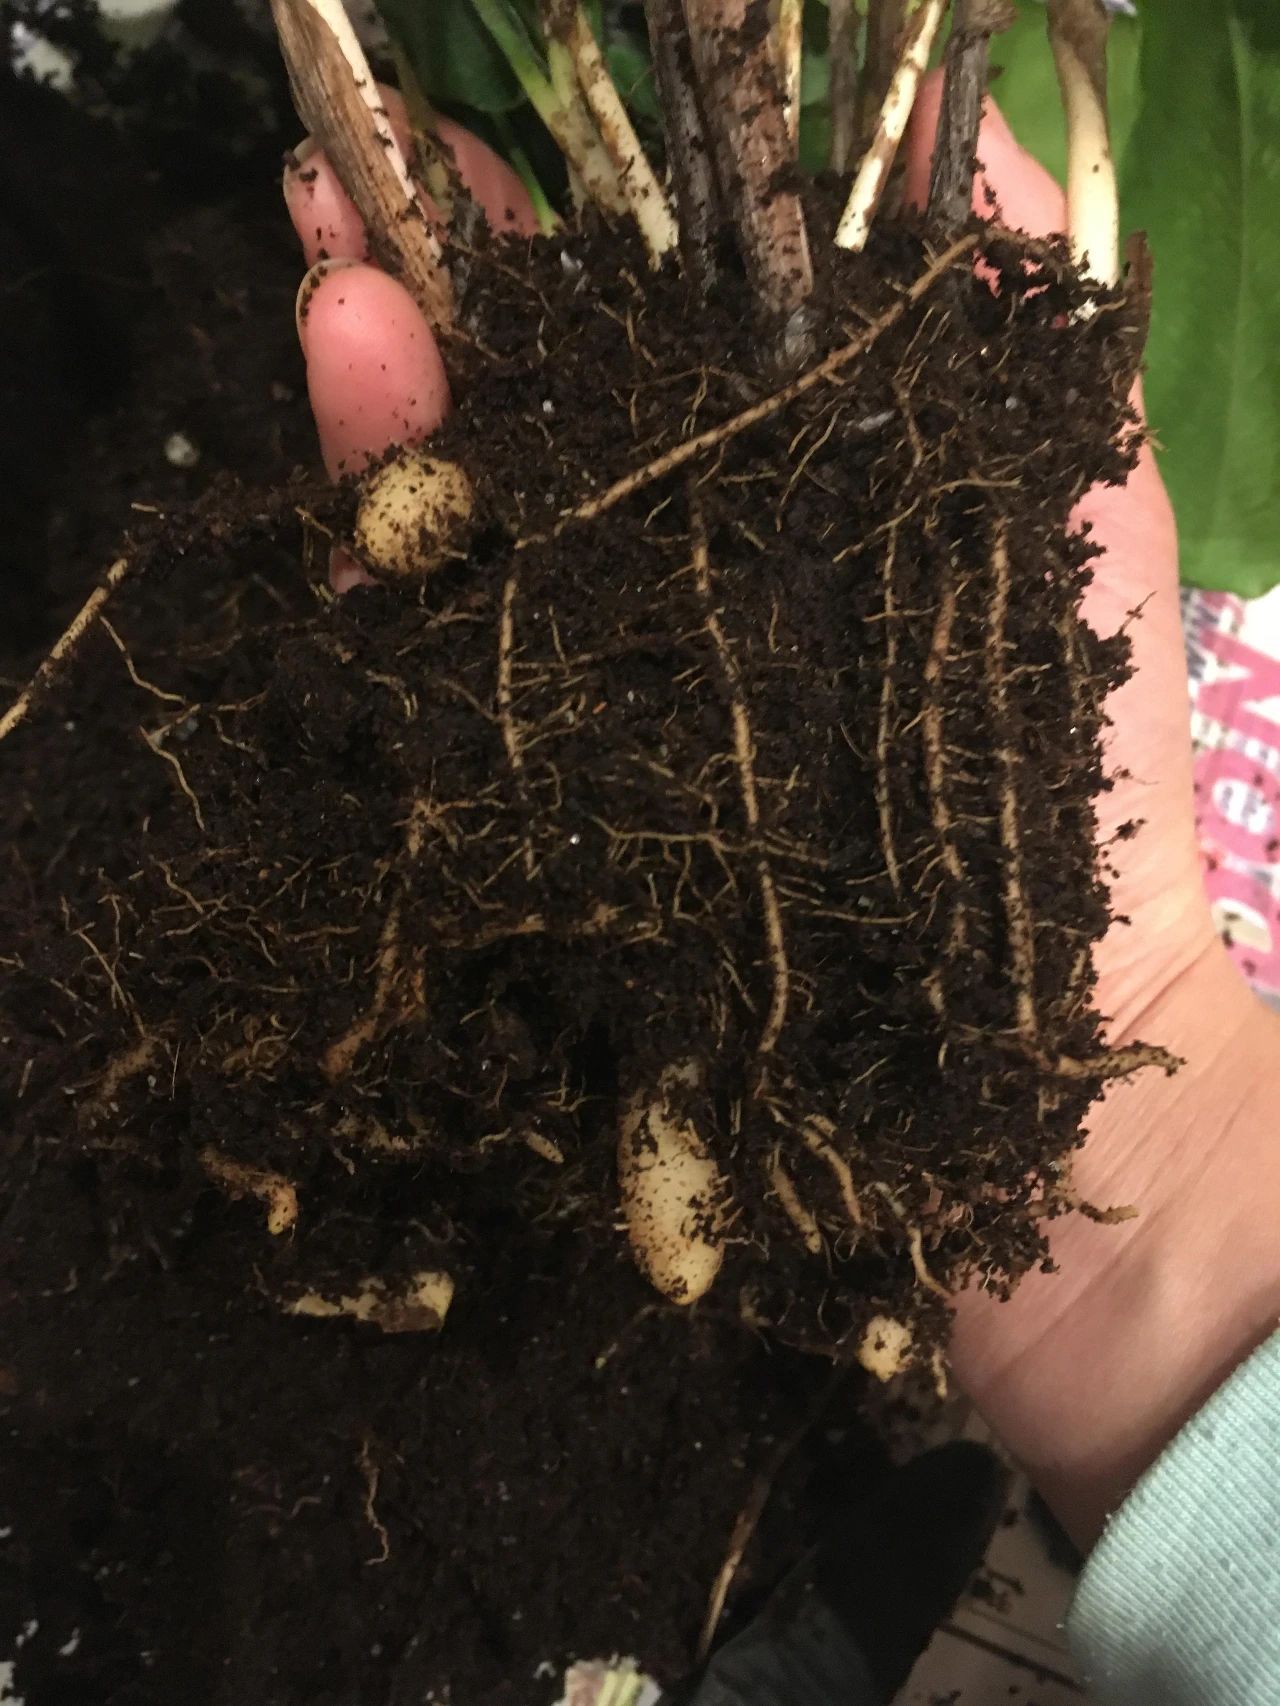 马赛克竹芋根茎底部有块茎状的肉质根系,特别害怕土壤积水,土质要疏松